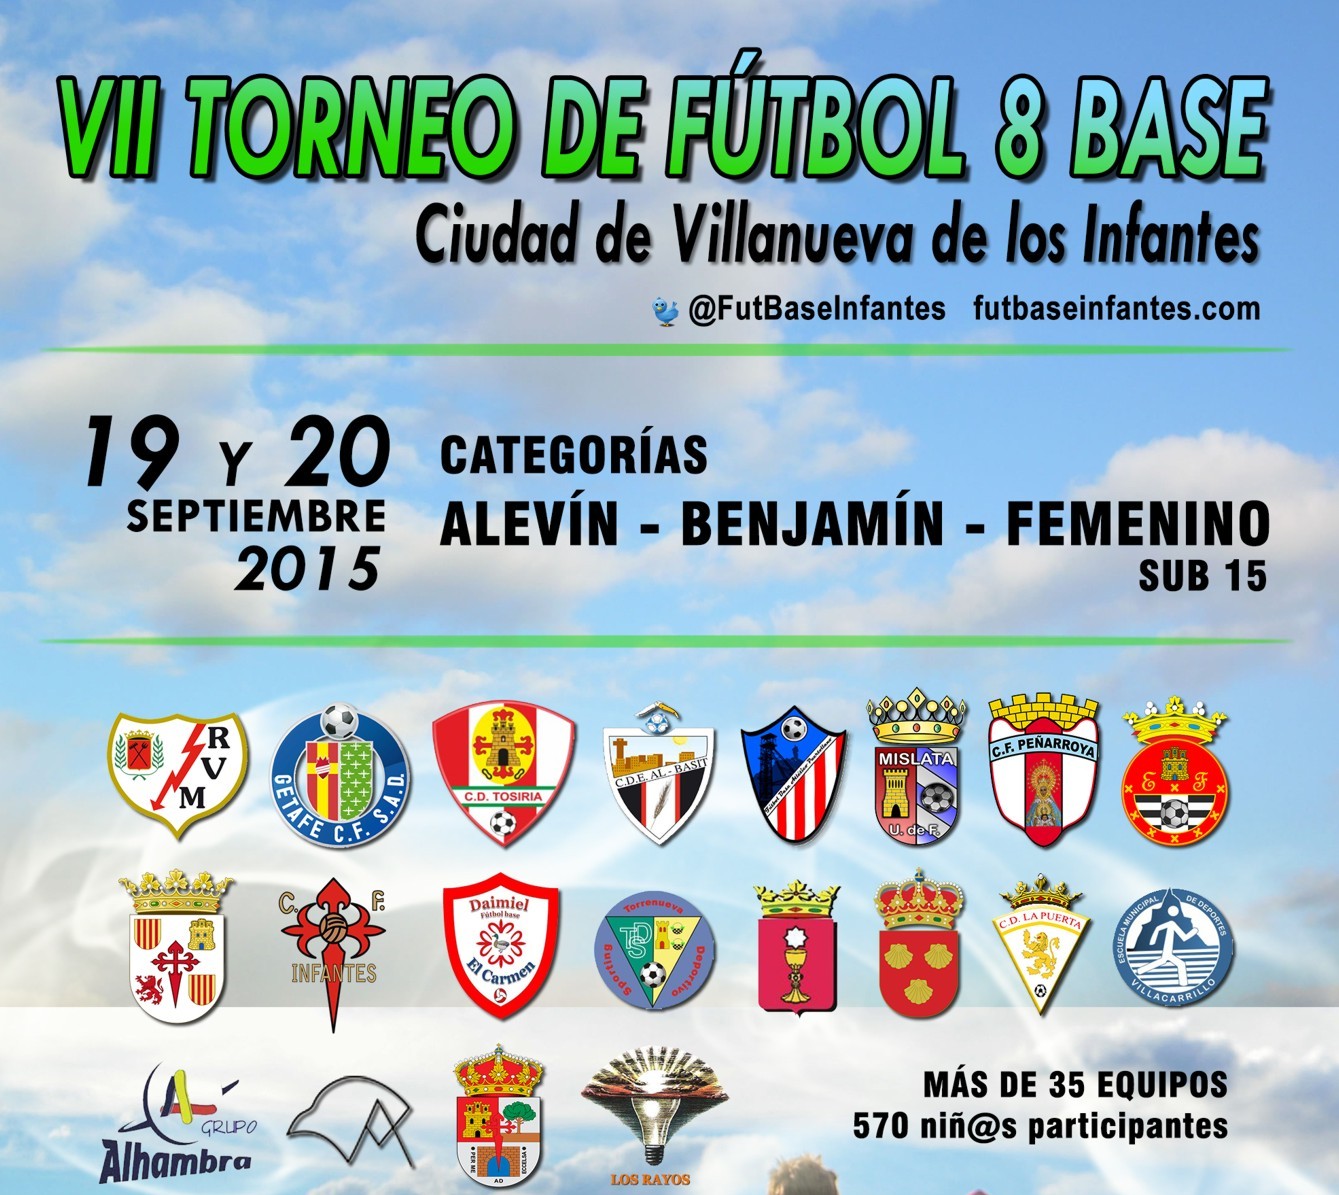 VII Torneo Nacional de Fútbol-8 Base “Ciudad Villanueva de los Infantes”